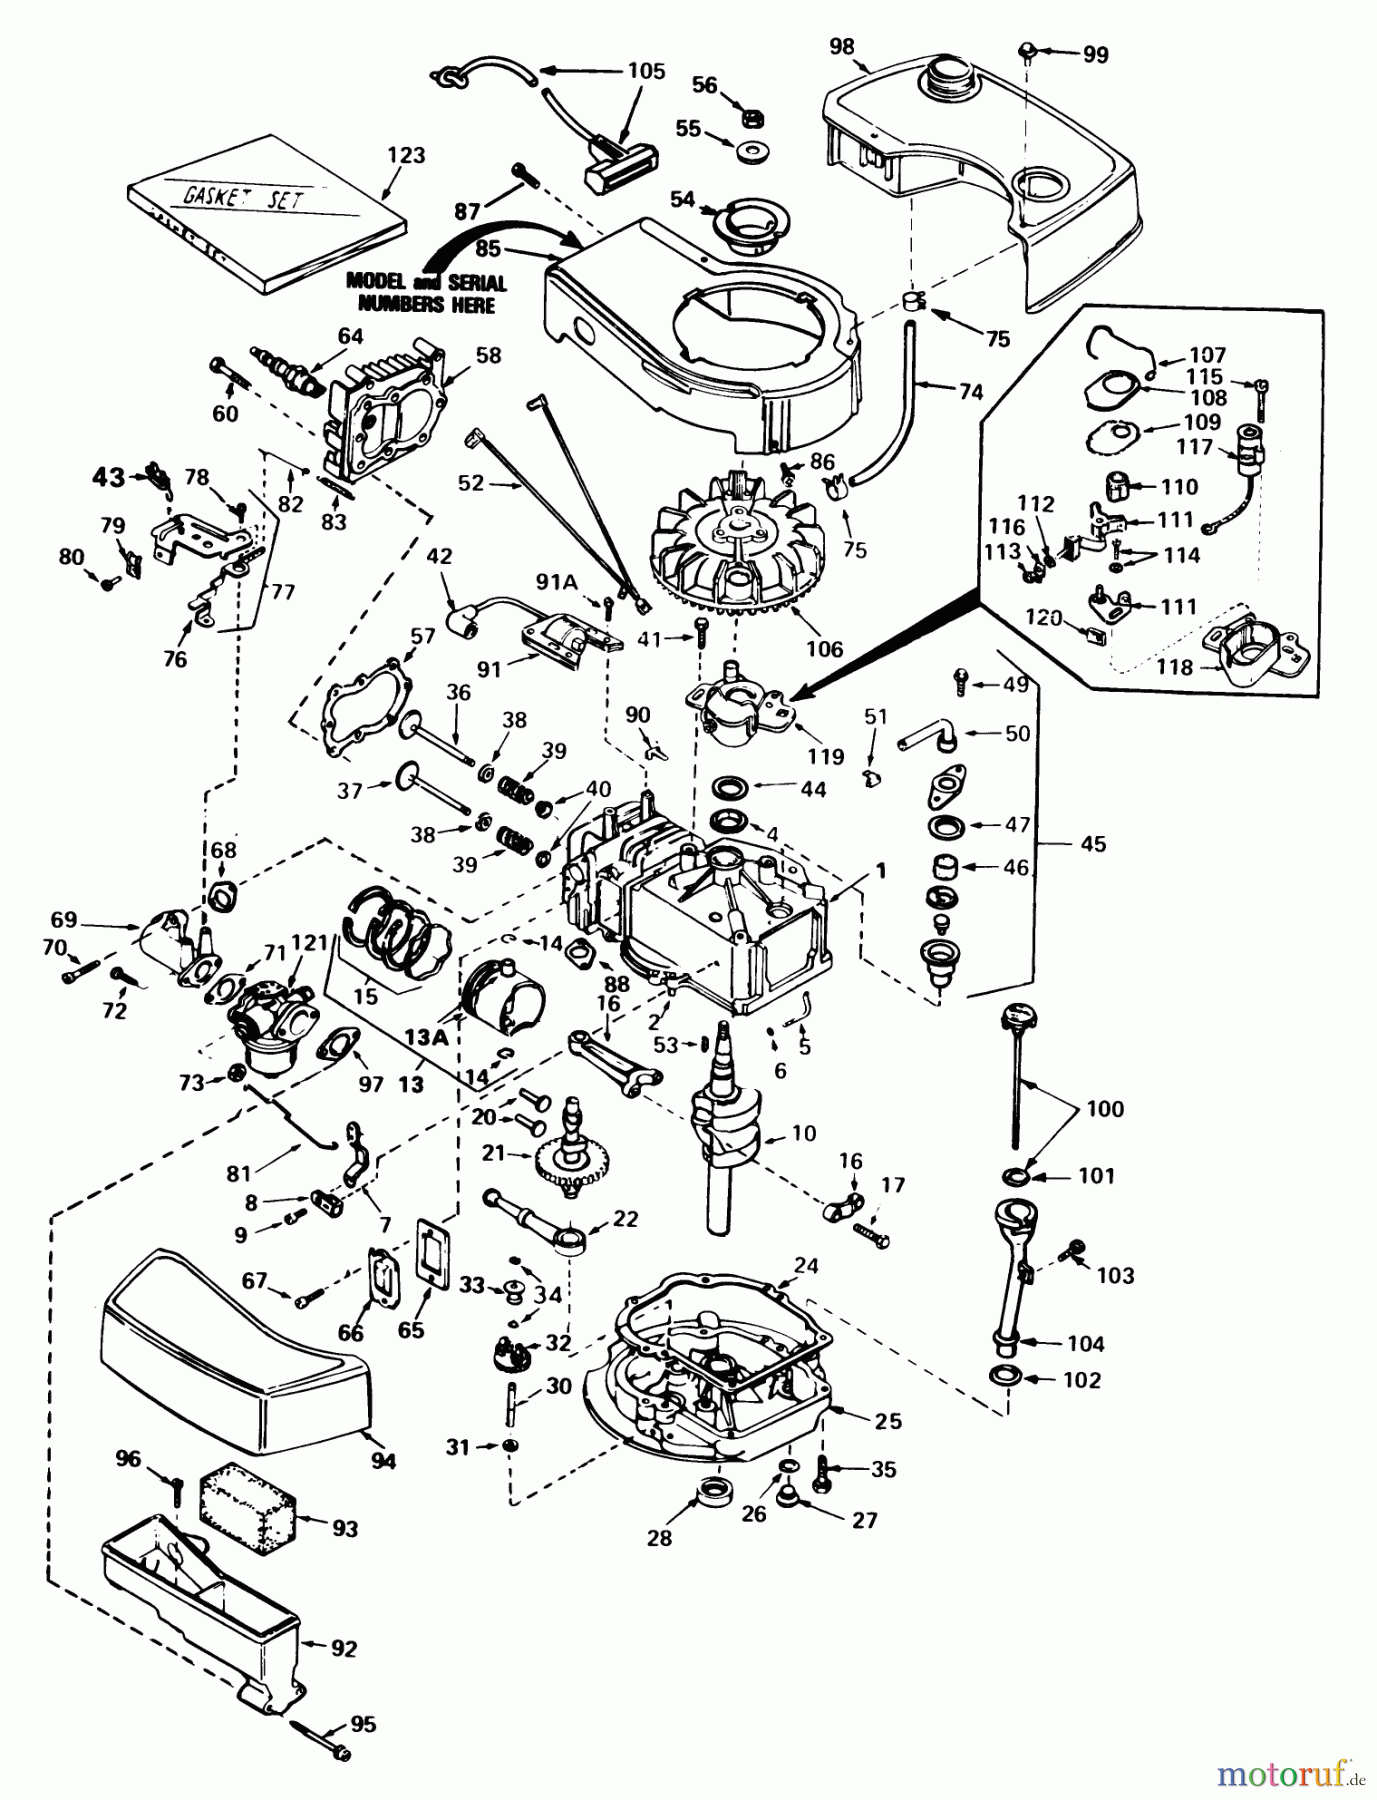  Toro Neu Mowers, Walk-Behind Seite 1 20790 - Toro Lawnmower, 1981 (1000001-1999999) ENGINE TECUMSEH MODEL NO. TNT 100-10061D